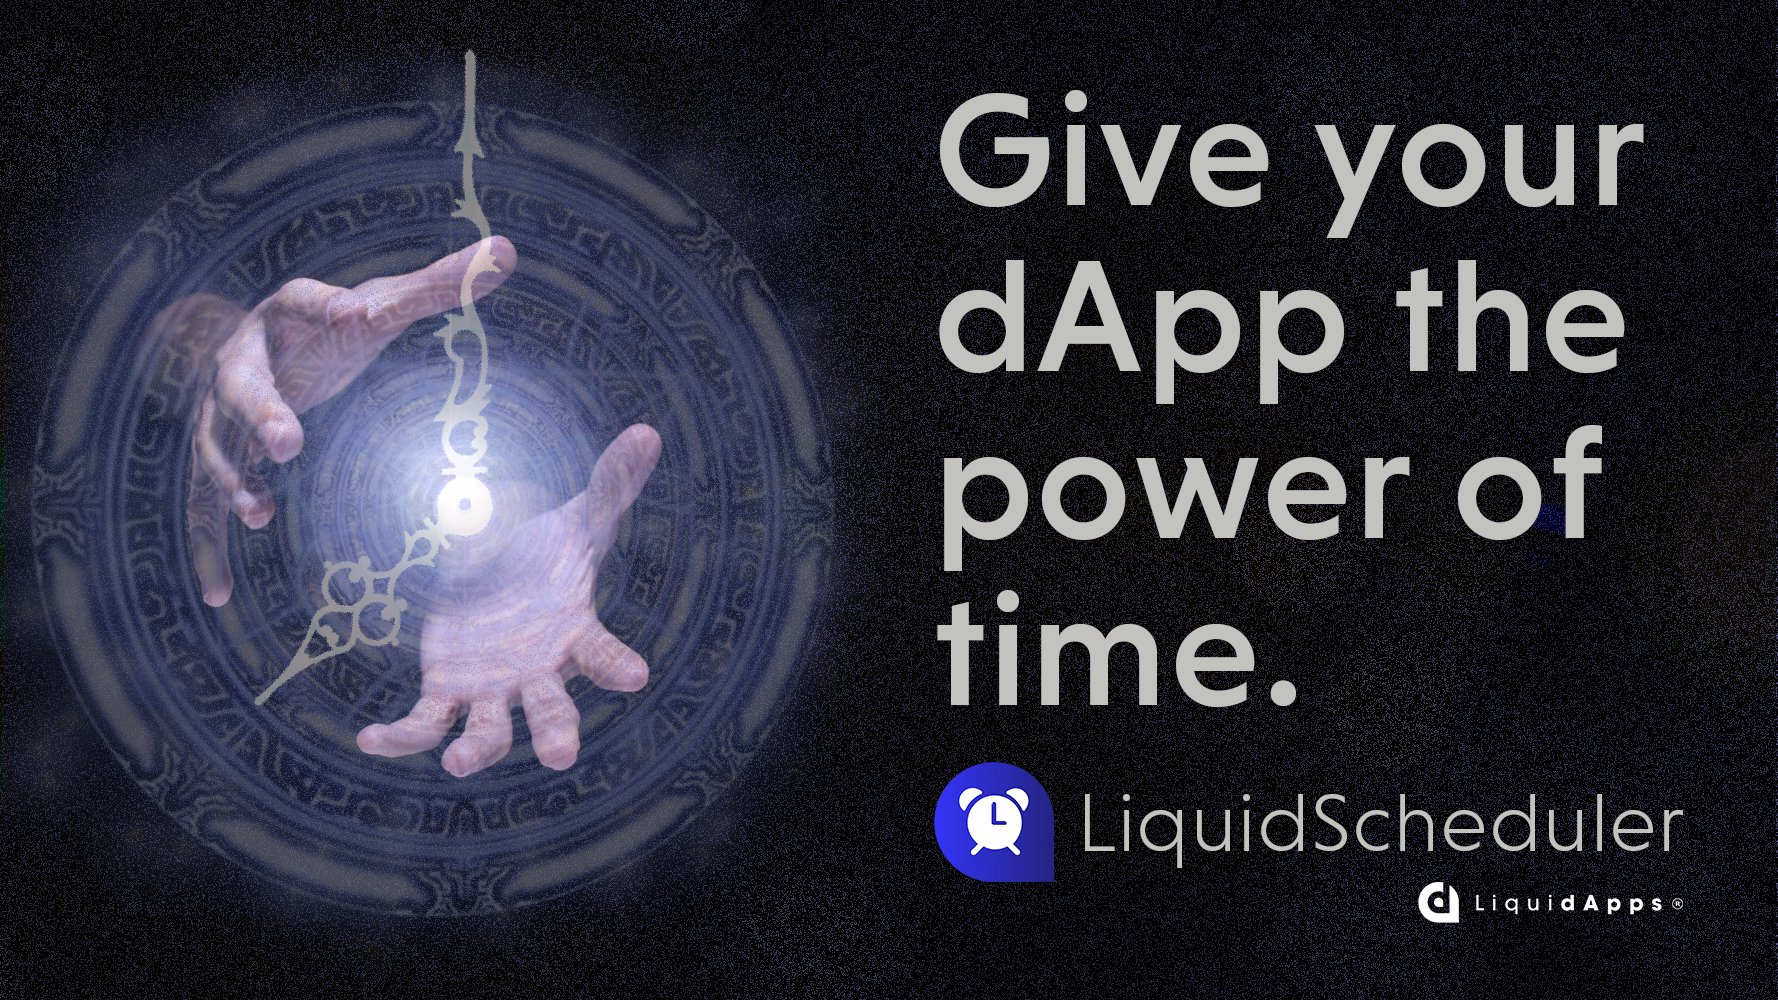 LiquidScheduler: New Service from the DAPP Network